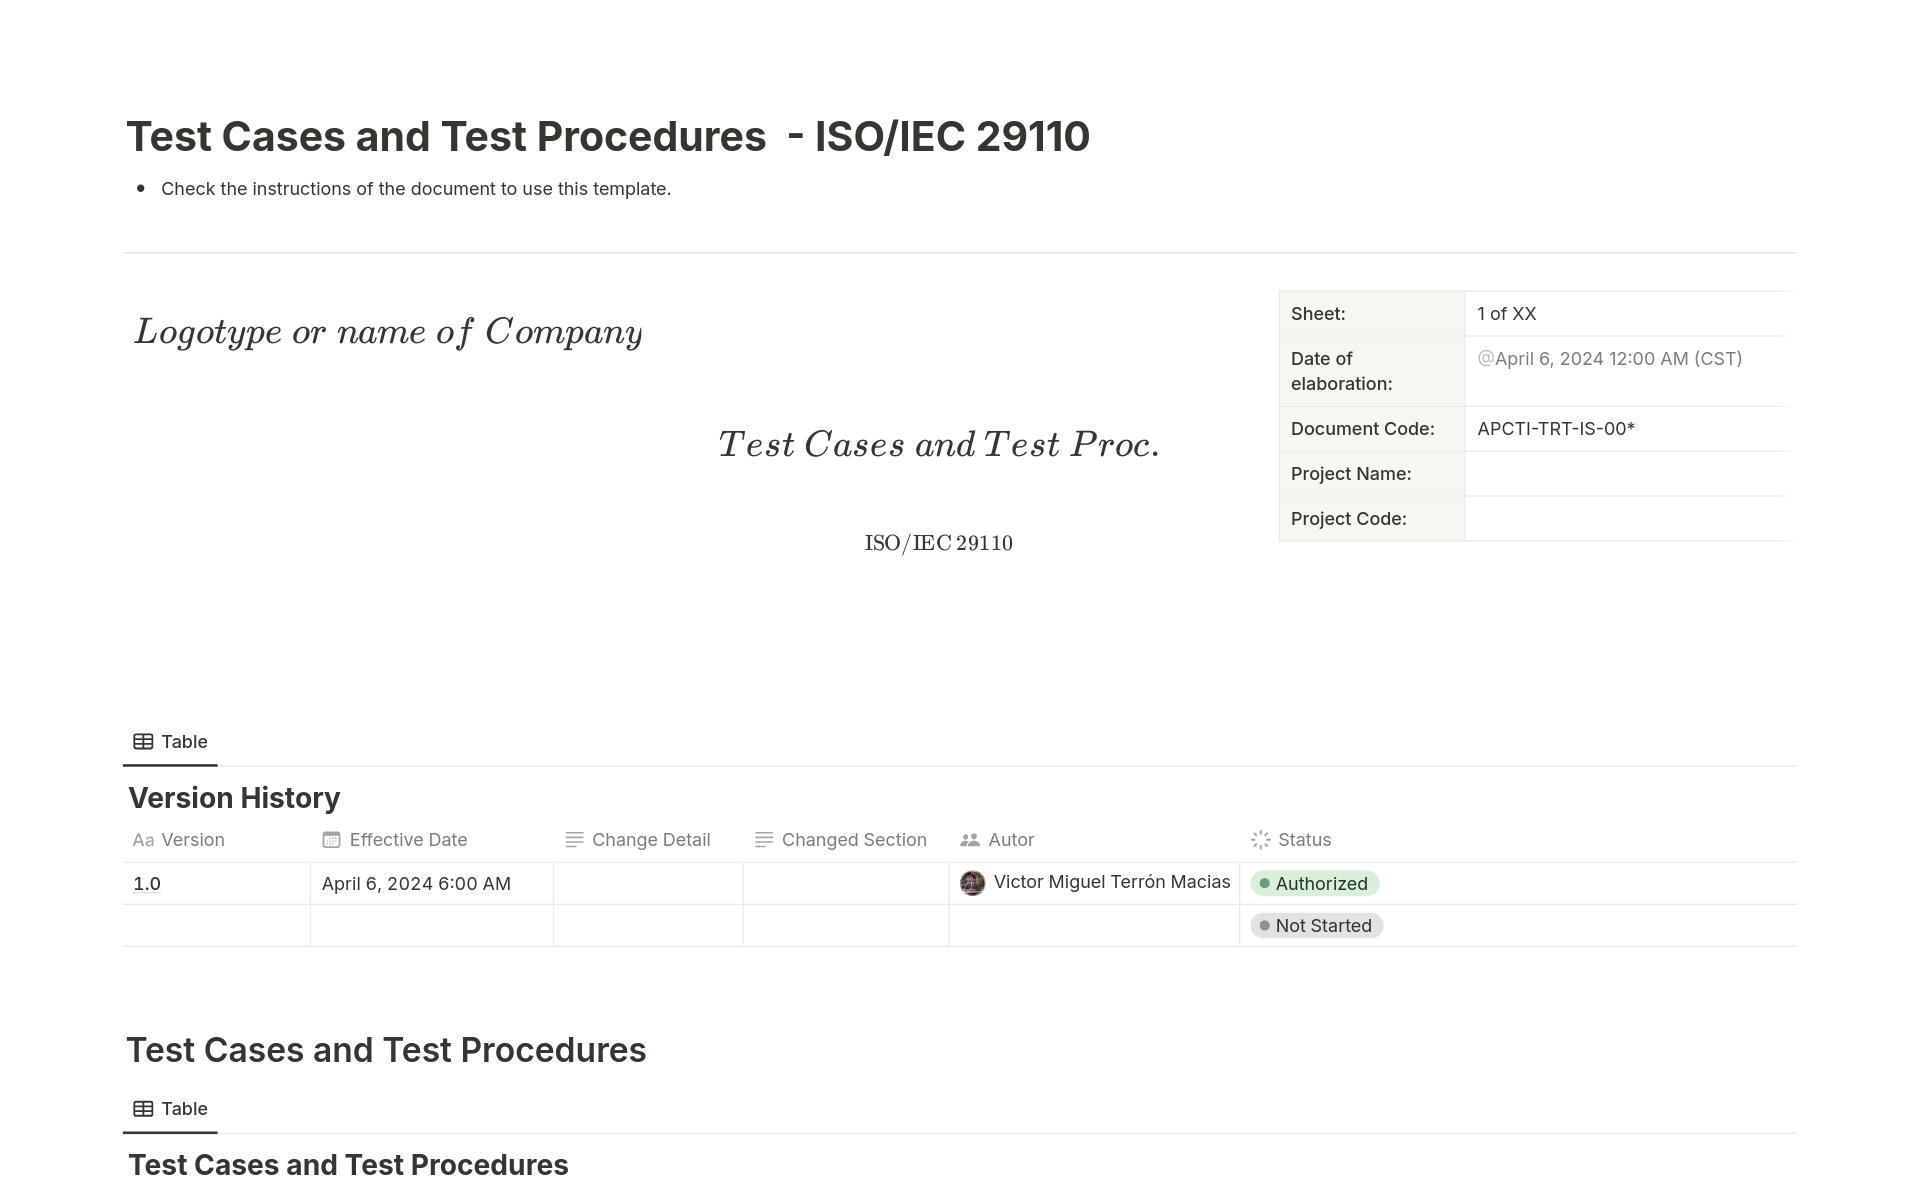 Vista previa de una plantilla para Test Cases and Test Procedures